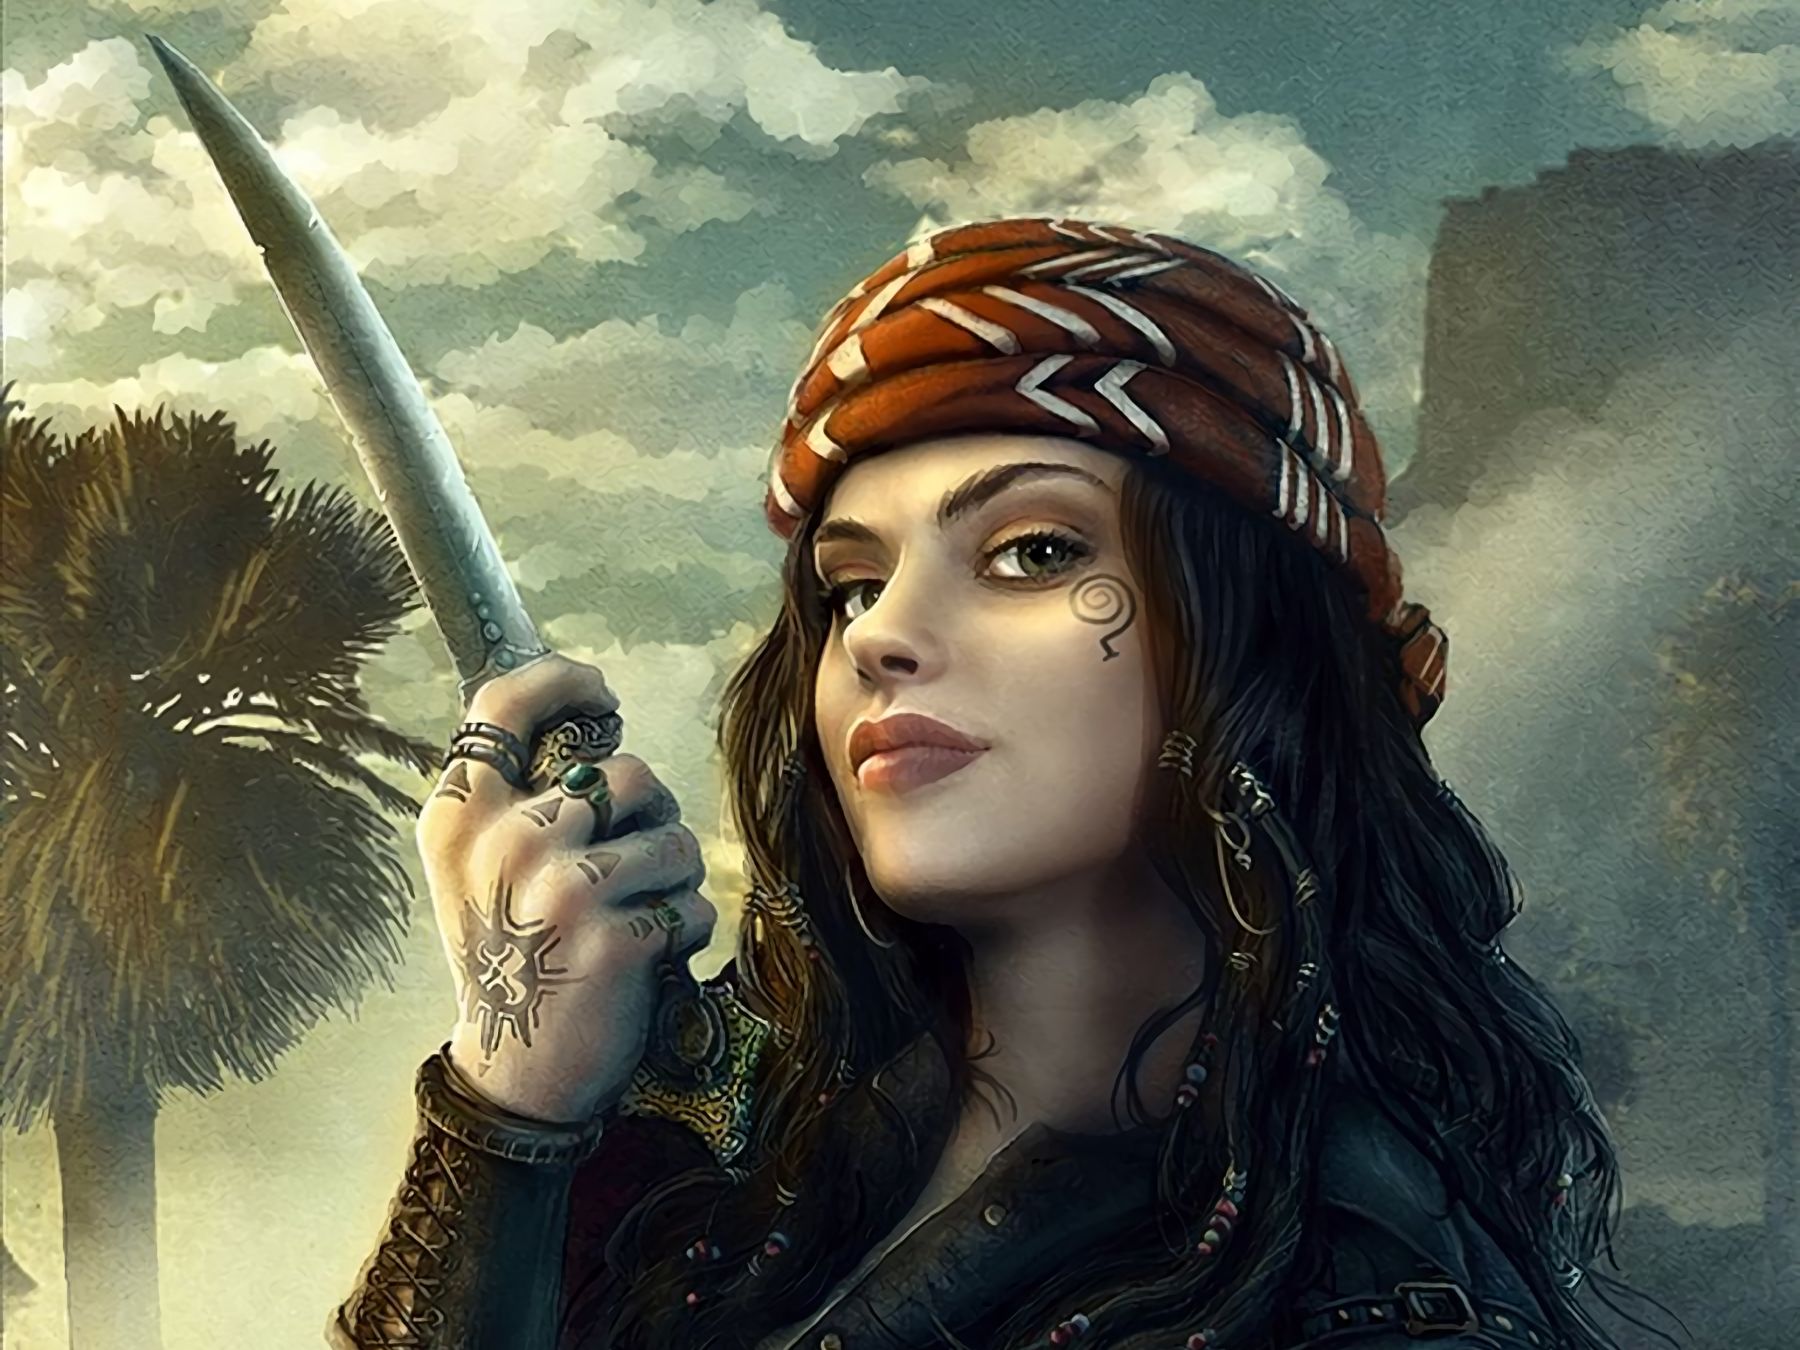 Descarga gratuita de fondo de pantalla para móvil de Fantasía, Tatuaje, Espada, Pirata, Mujeres Guerrera, Mujer Guerrera.